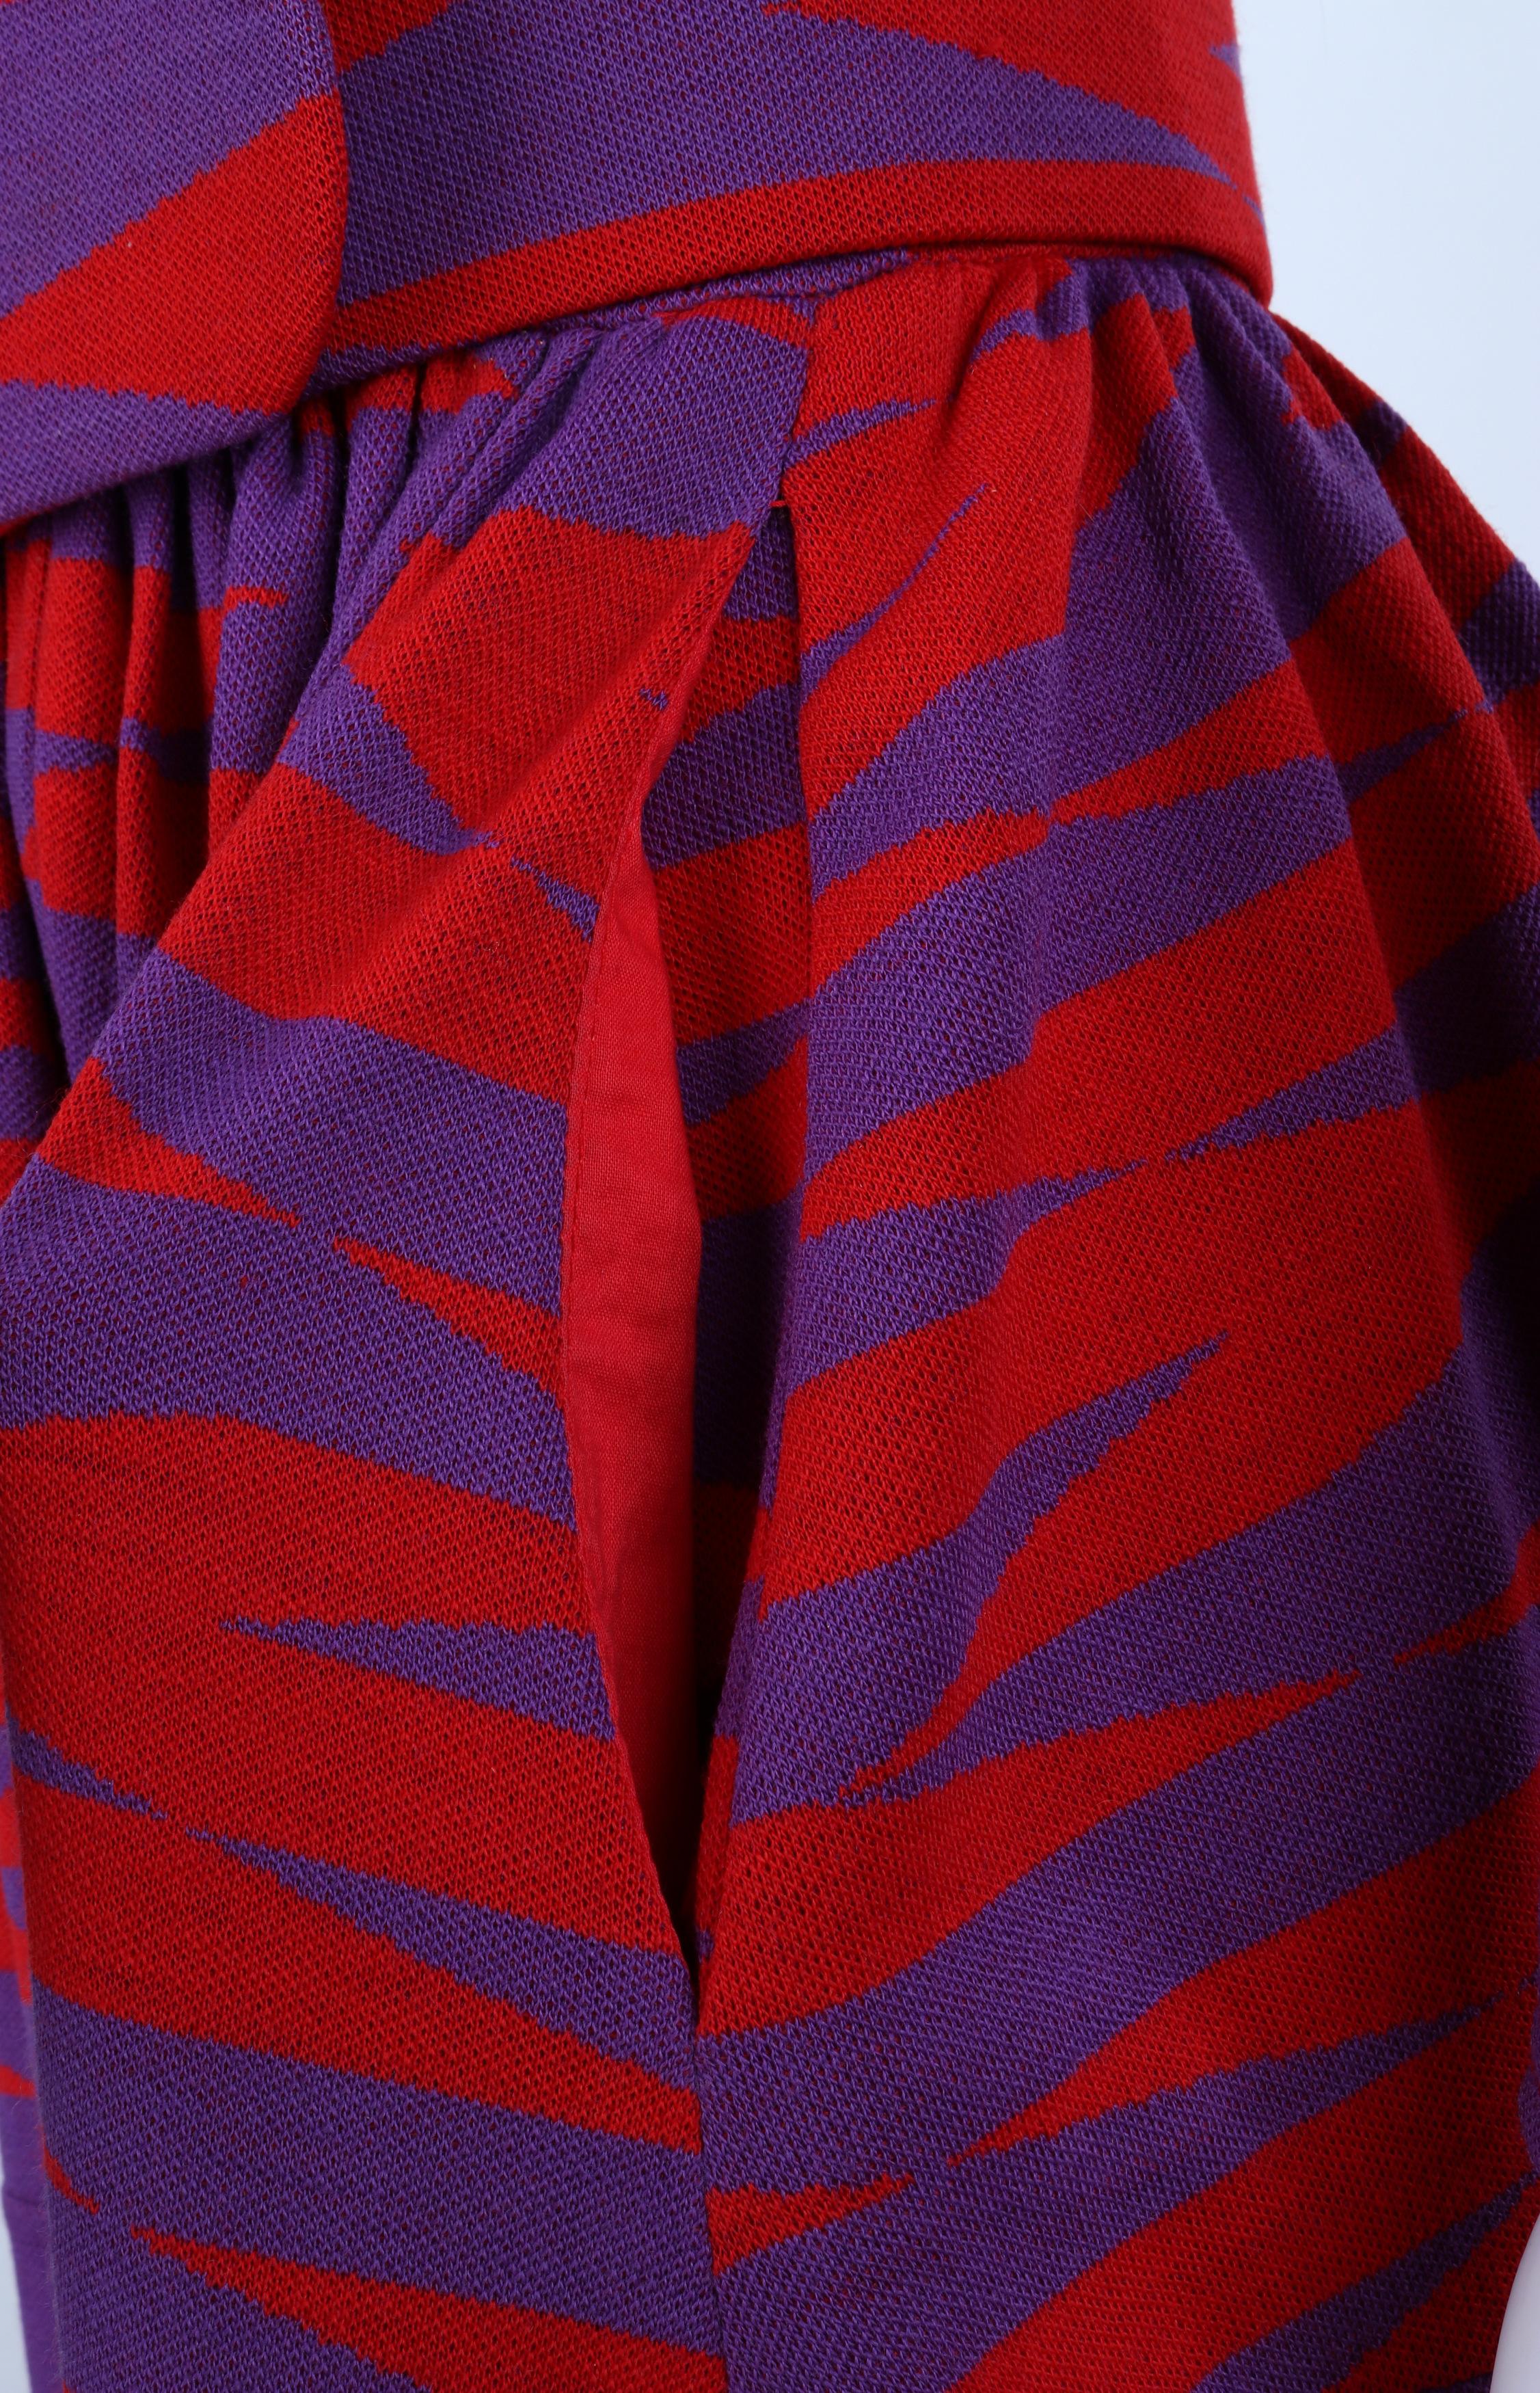 RUDI GERNREICH Harmon Knitwear c.1971 Purple Red Mod Op Art Wool Knit Day Dress For Sale 5